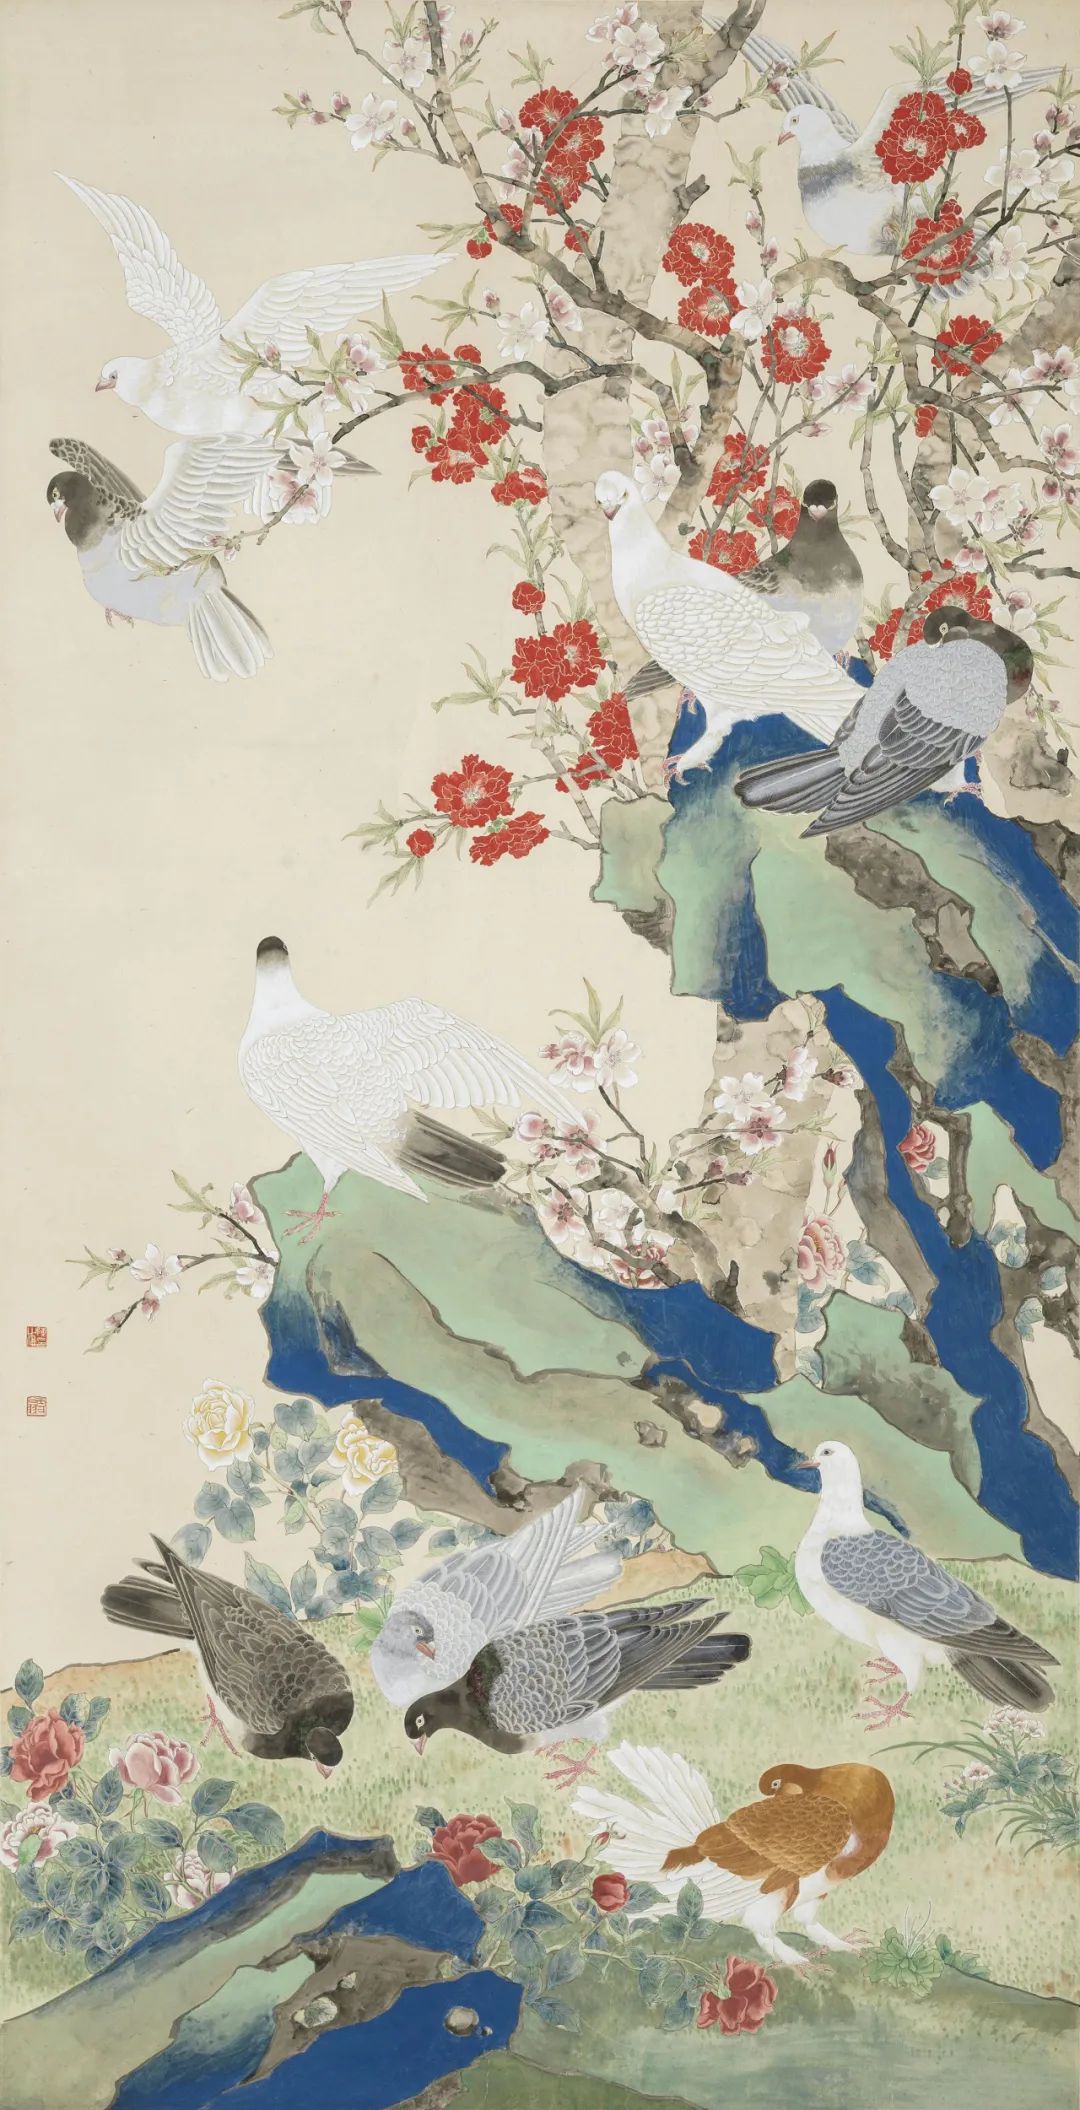 陈之佛 和平之春 169.3x86cm 中国画 1953年 中国美术馆藏 (艺术家家属捐赠)